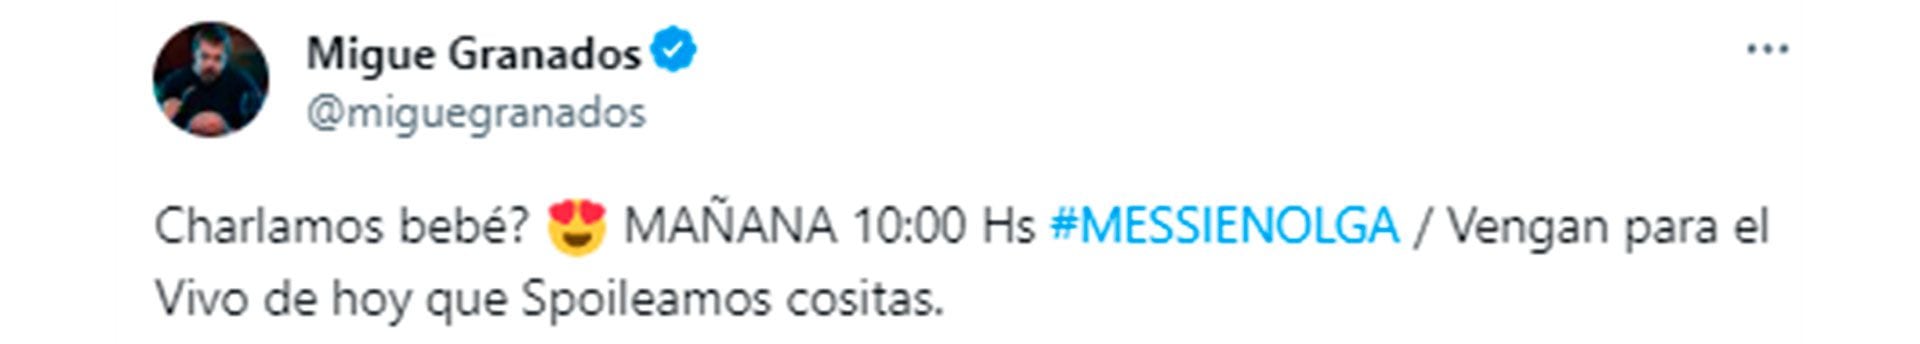 El tuit de Migue Granados que acompañó el video con Lionel Messi